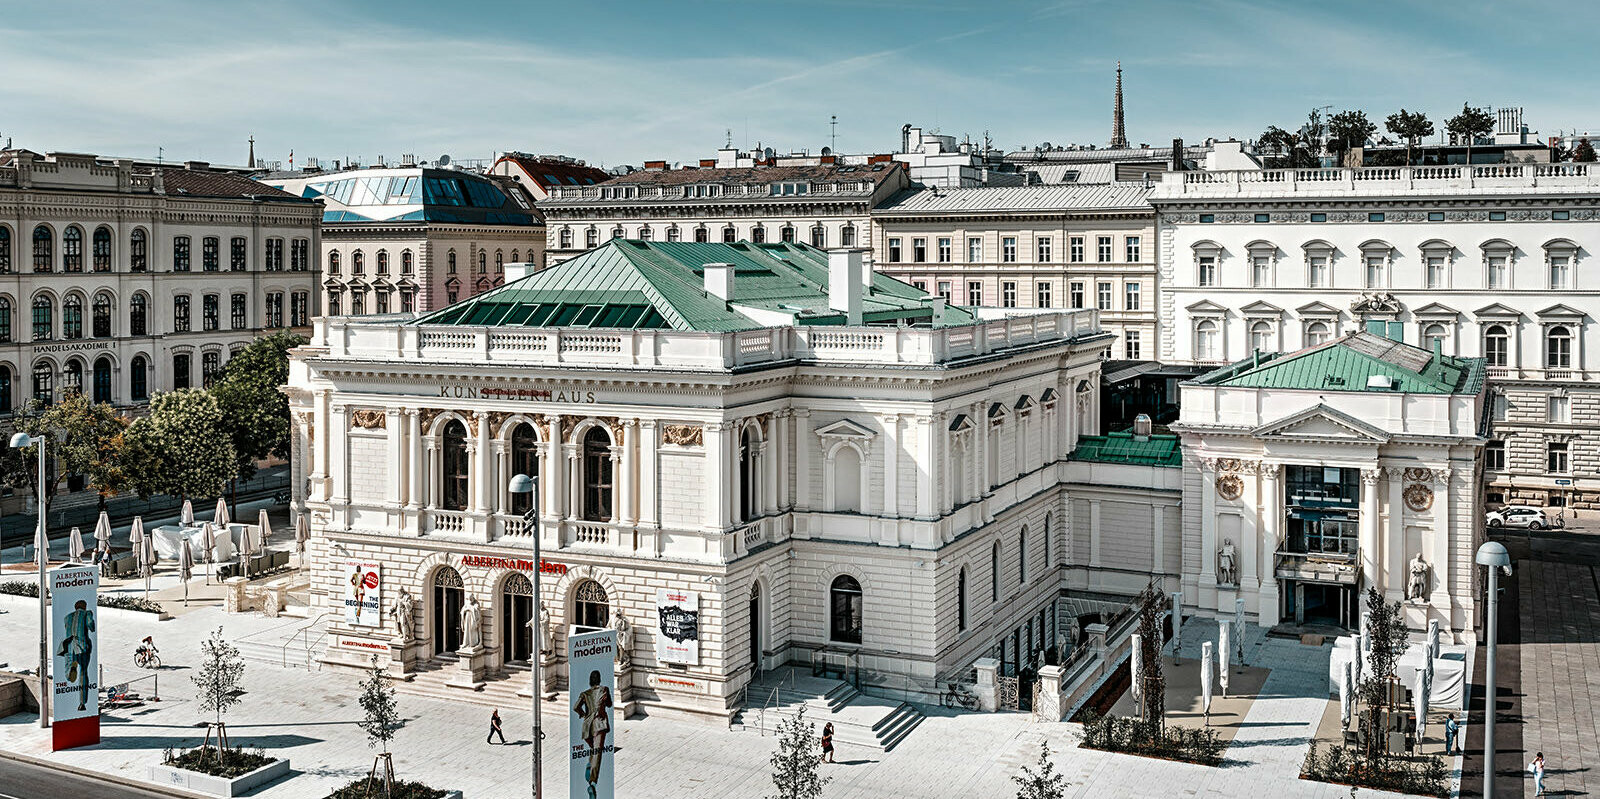 Es ist das Künstlerhaus in Wien zu sehen, umgeben von anderen Gebäuden.